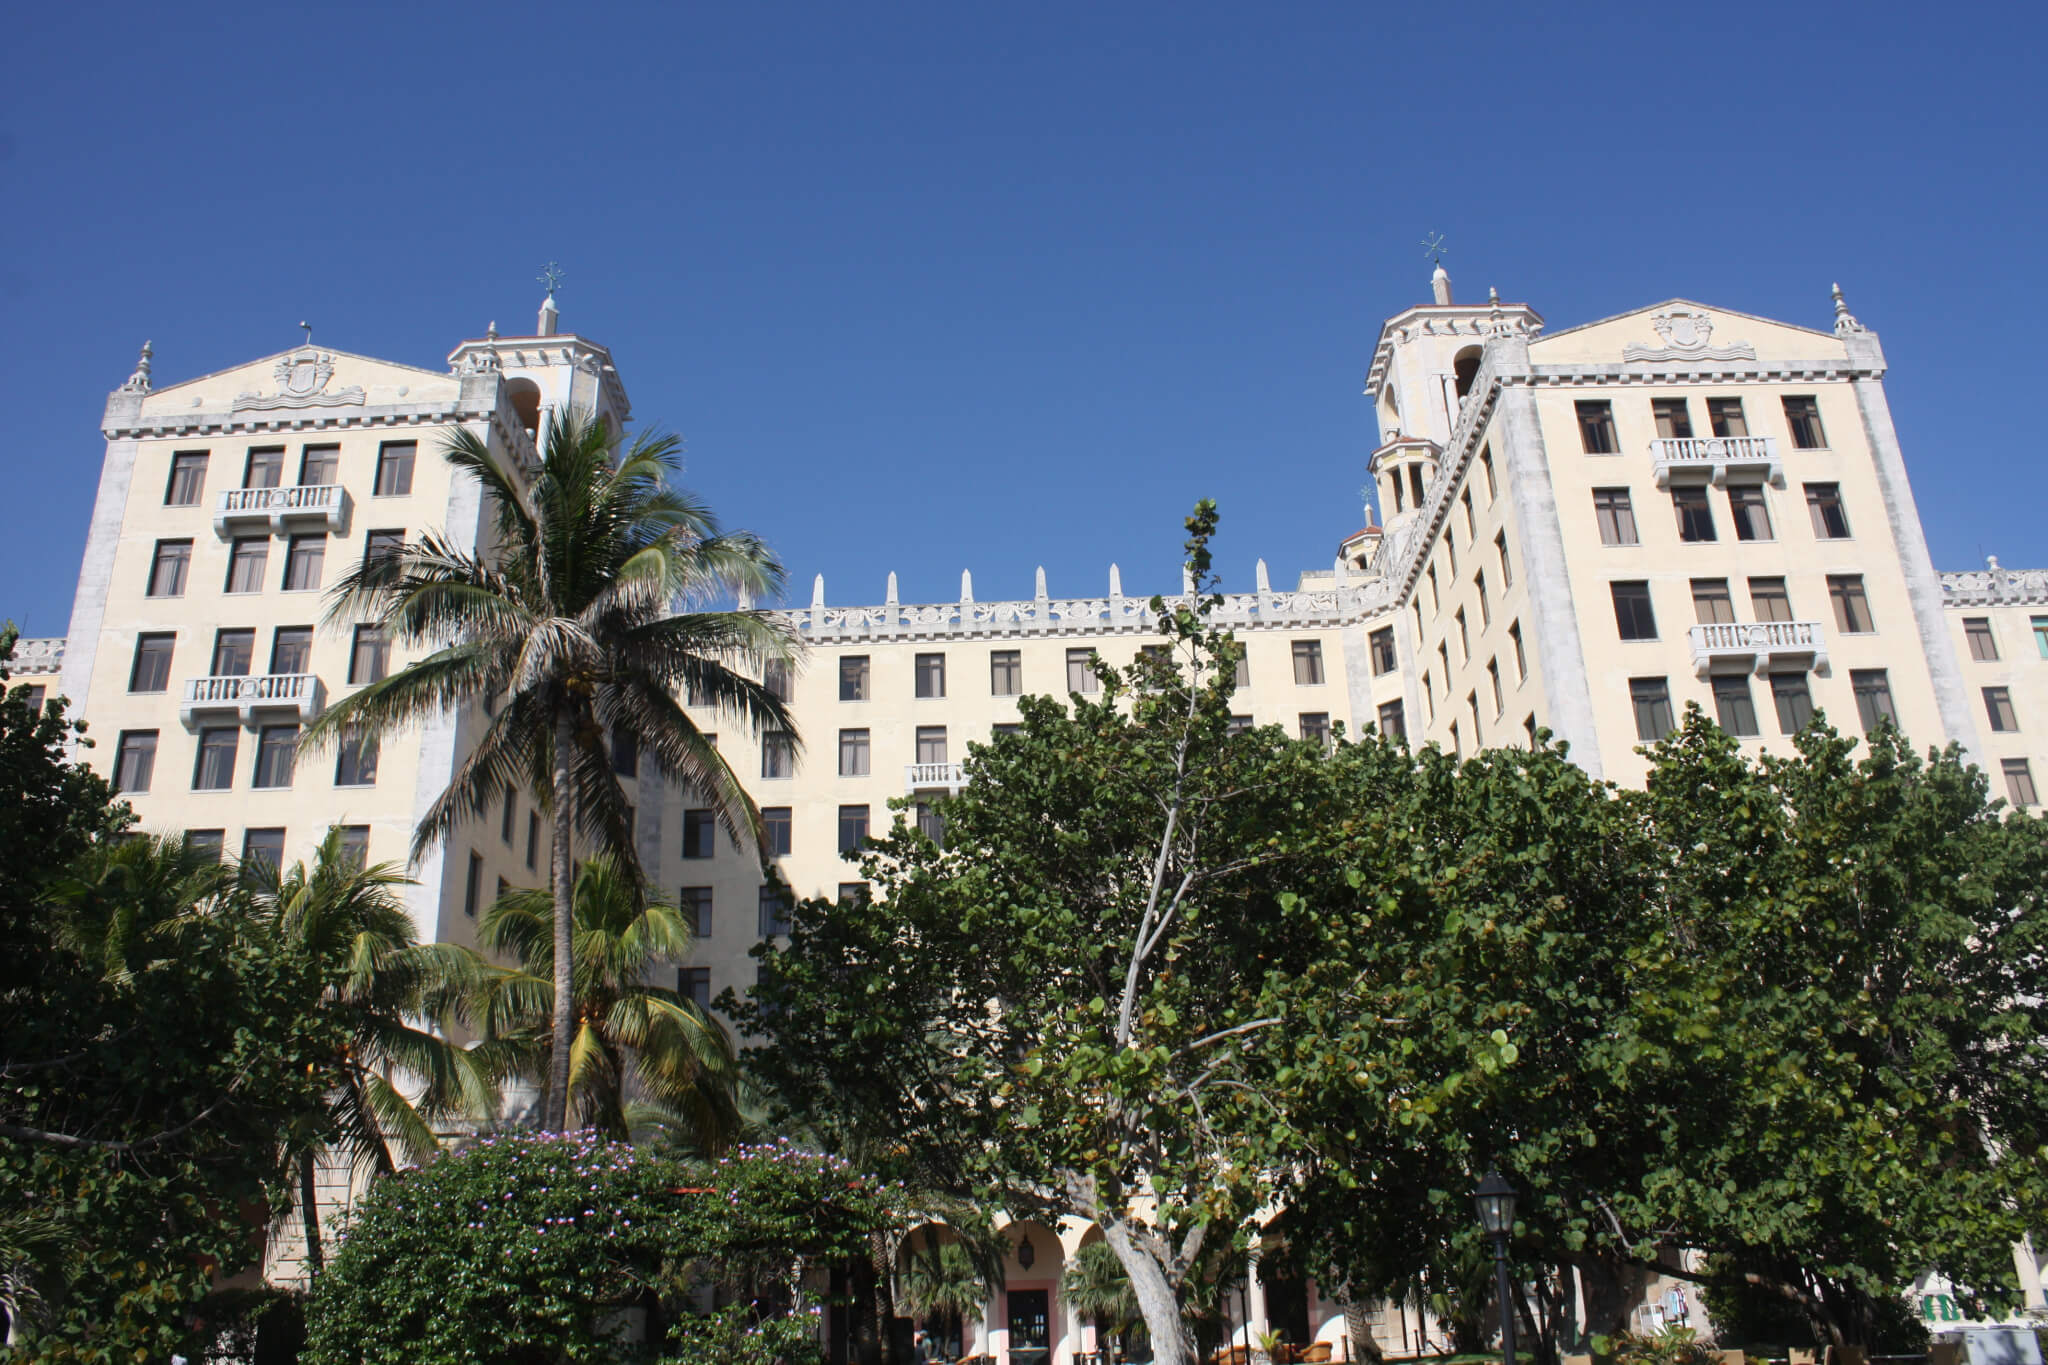 Hotel Nacional de Cuba, La Habana